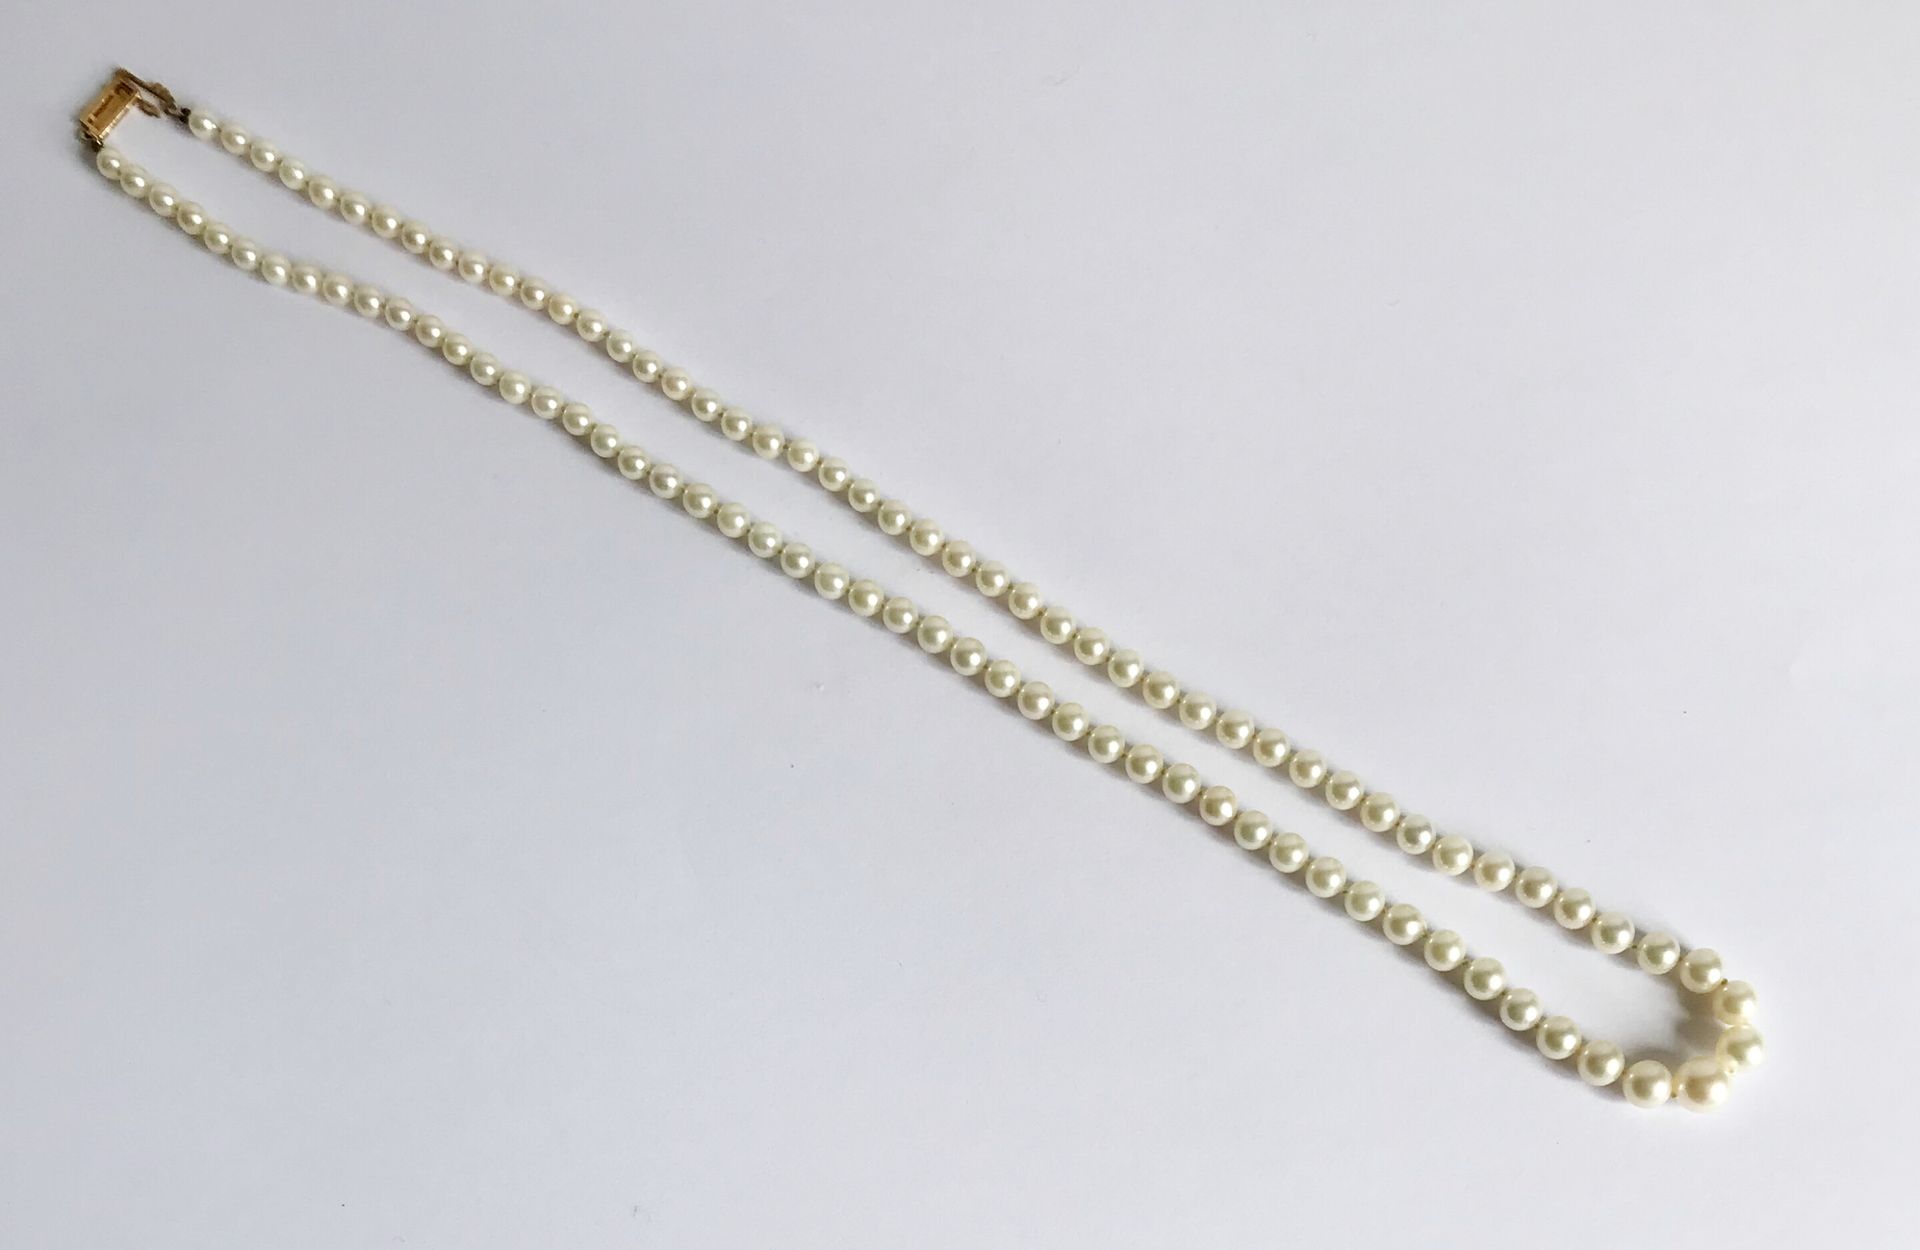 Null Halskette aus fallenden Zuchtperlen. Verschluss aus Gold.

L.: 55 cm